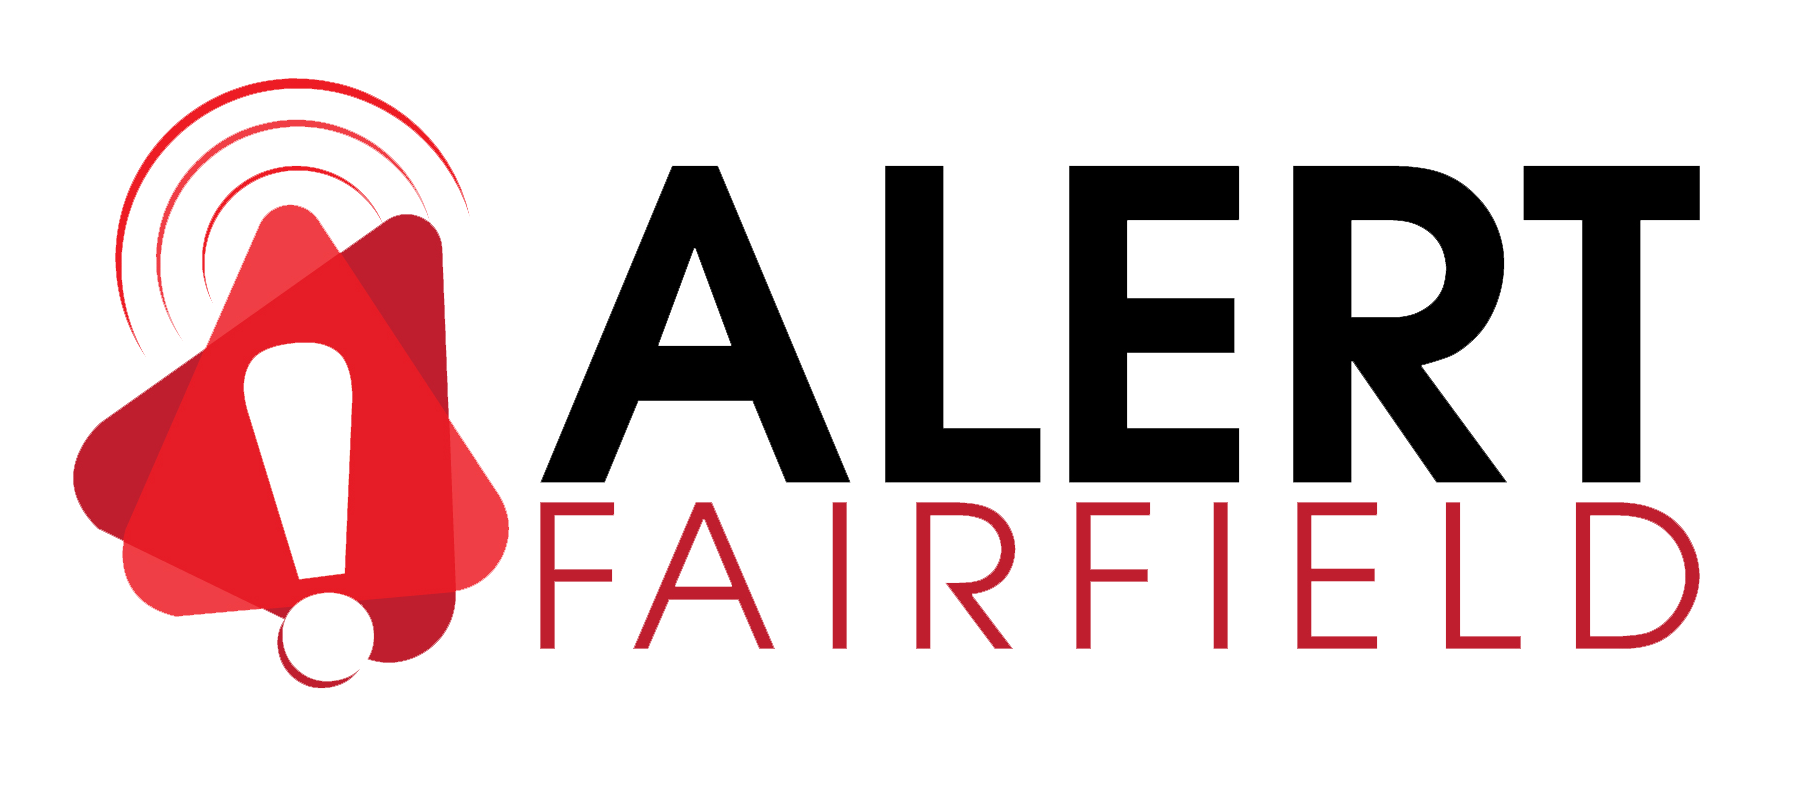 Alert - Fairfield County